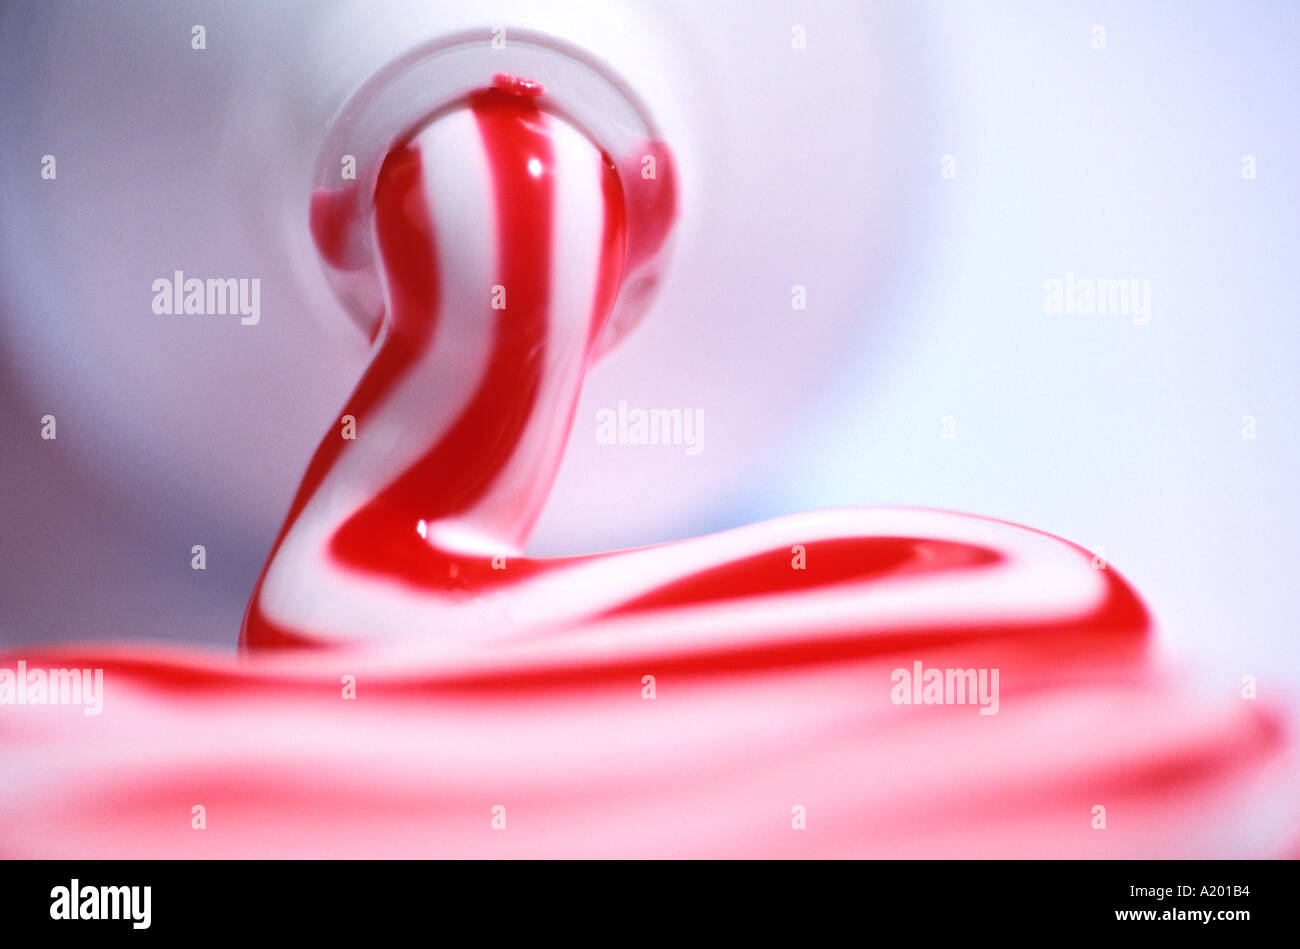 Zahnpasta. Rot-weiß gestreifte Zahnpasta aus der Tube gedrückt  Stockfotografie - Alamy